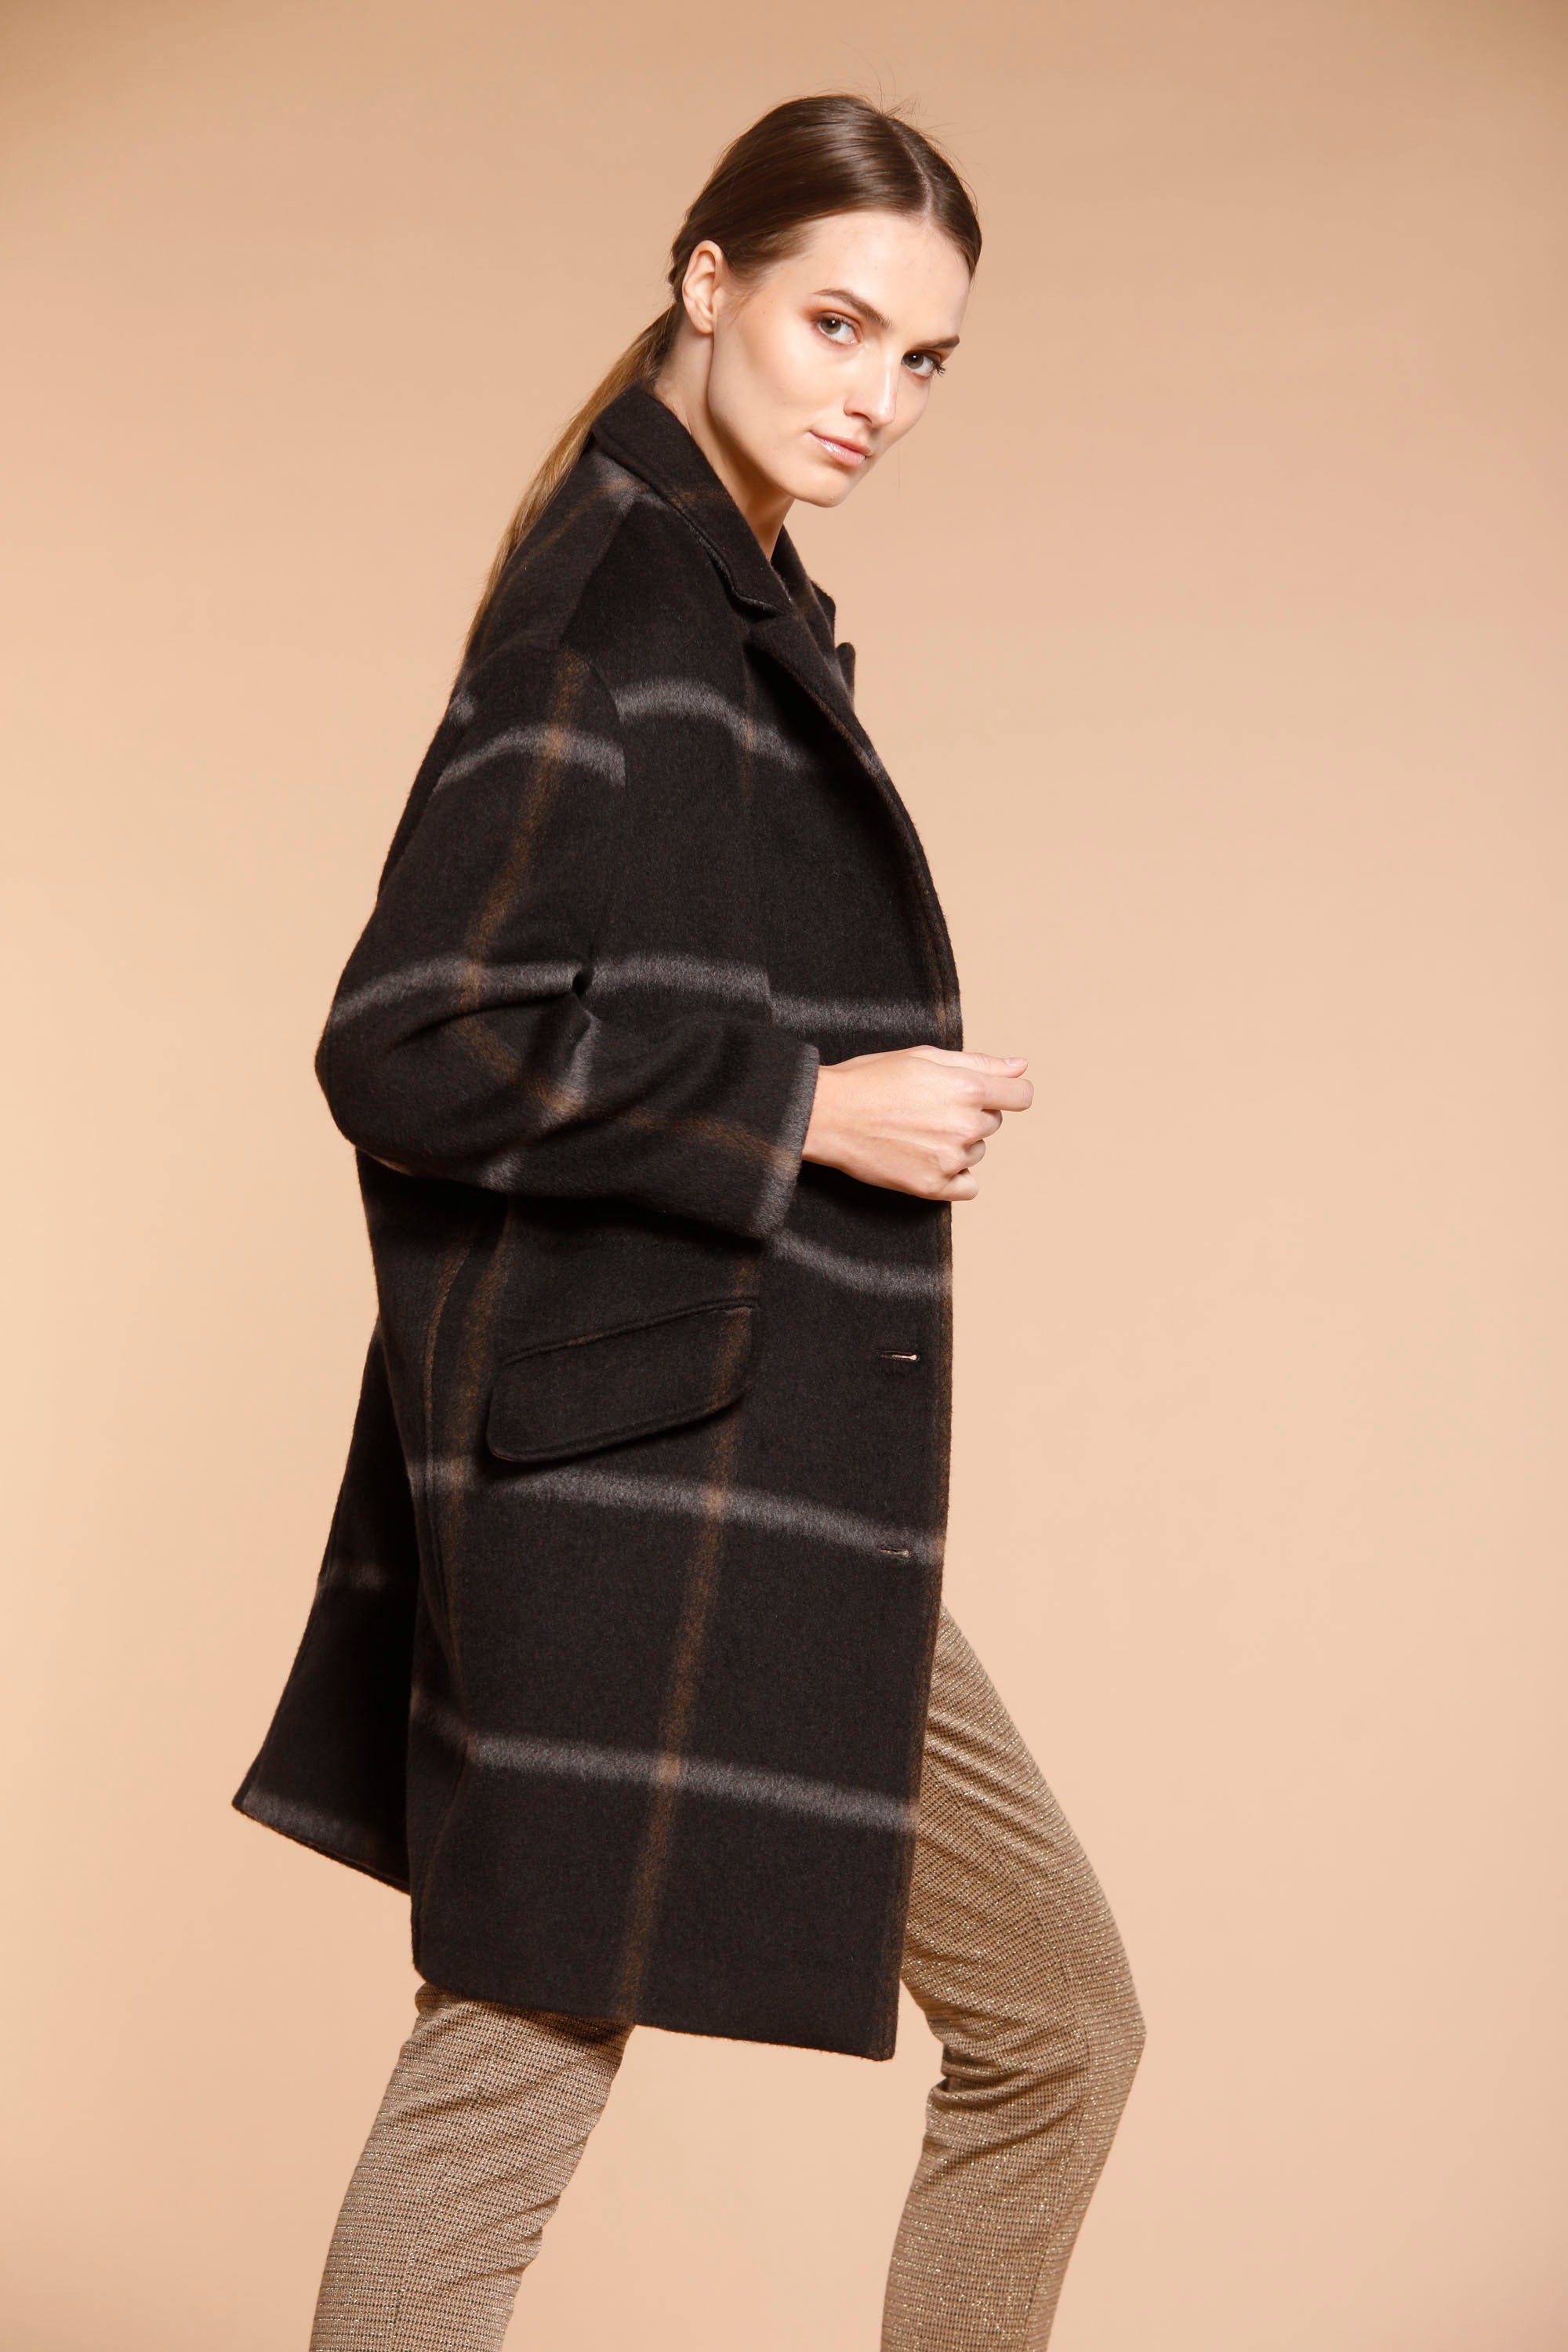 Image 4 de manteau femme en laine modèle Isabel Coat couleur marron motif carré de Mason's